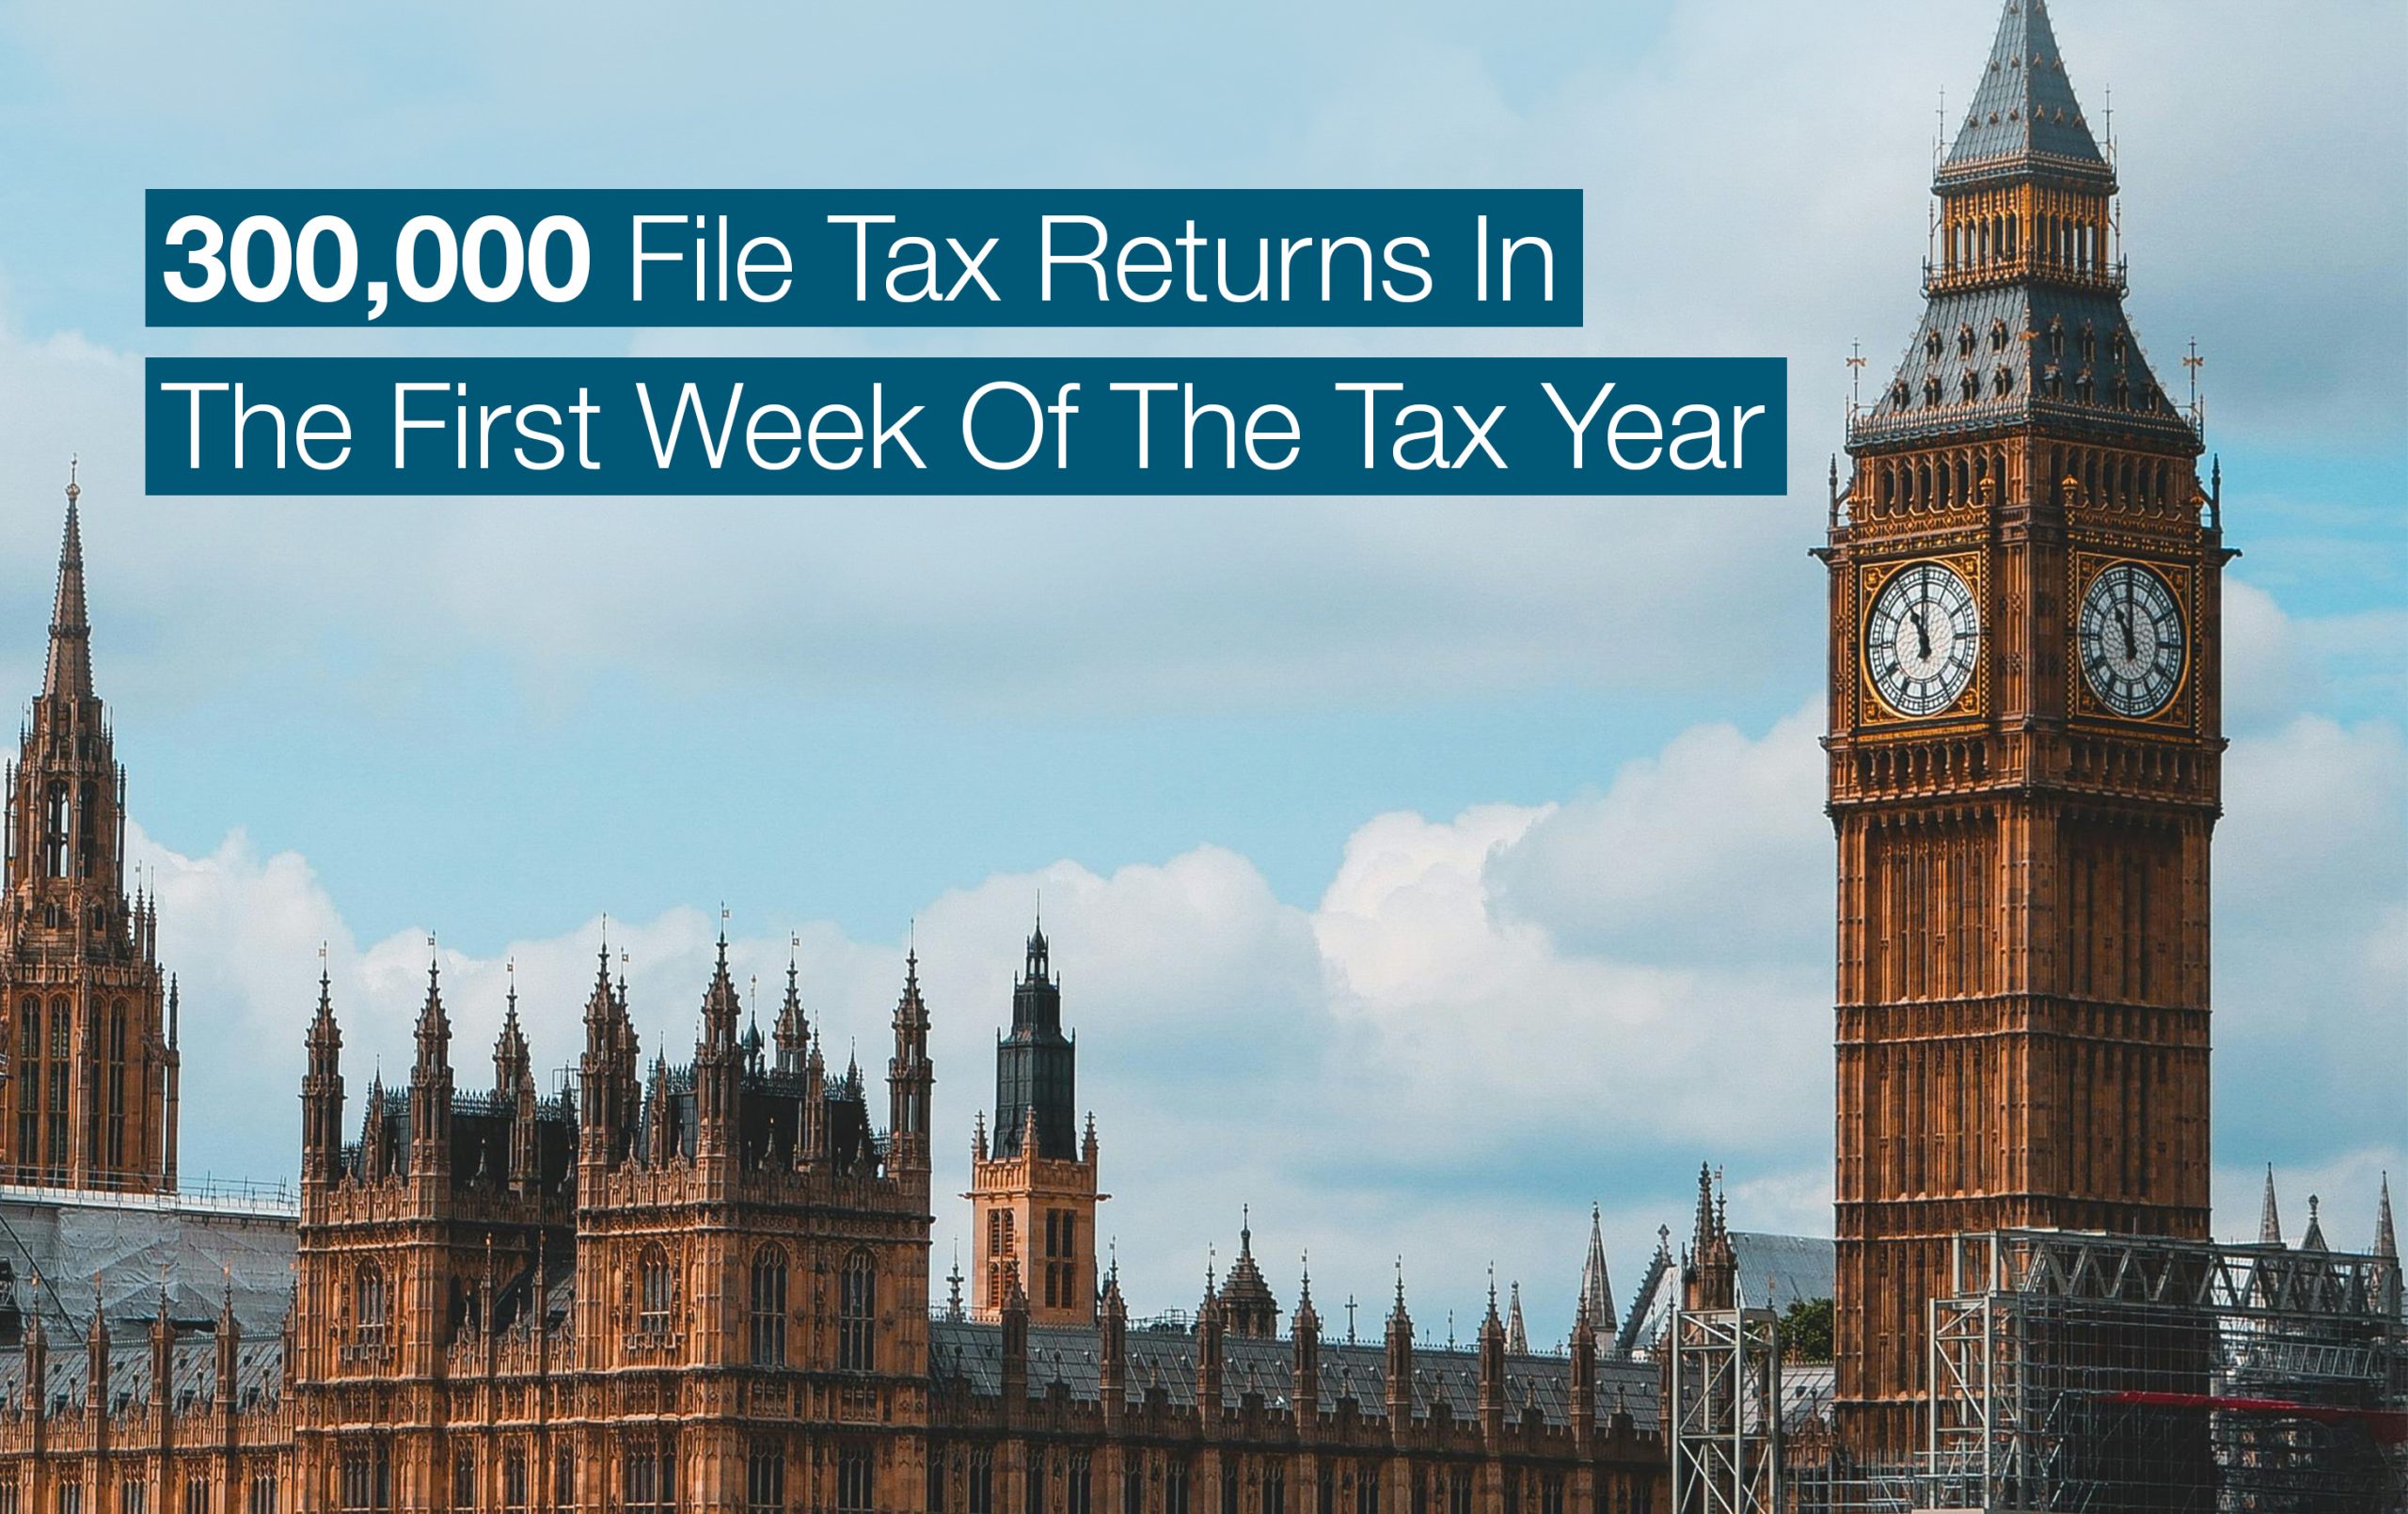 300,000 file tax returns